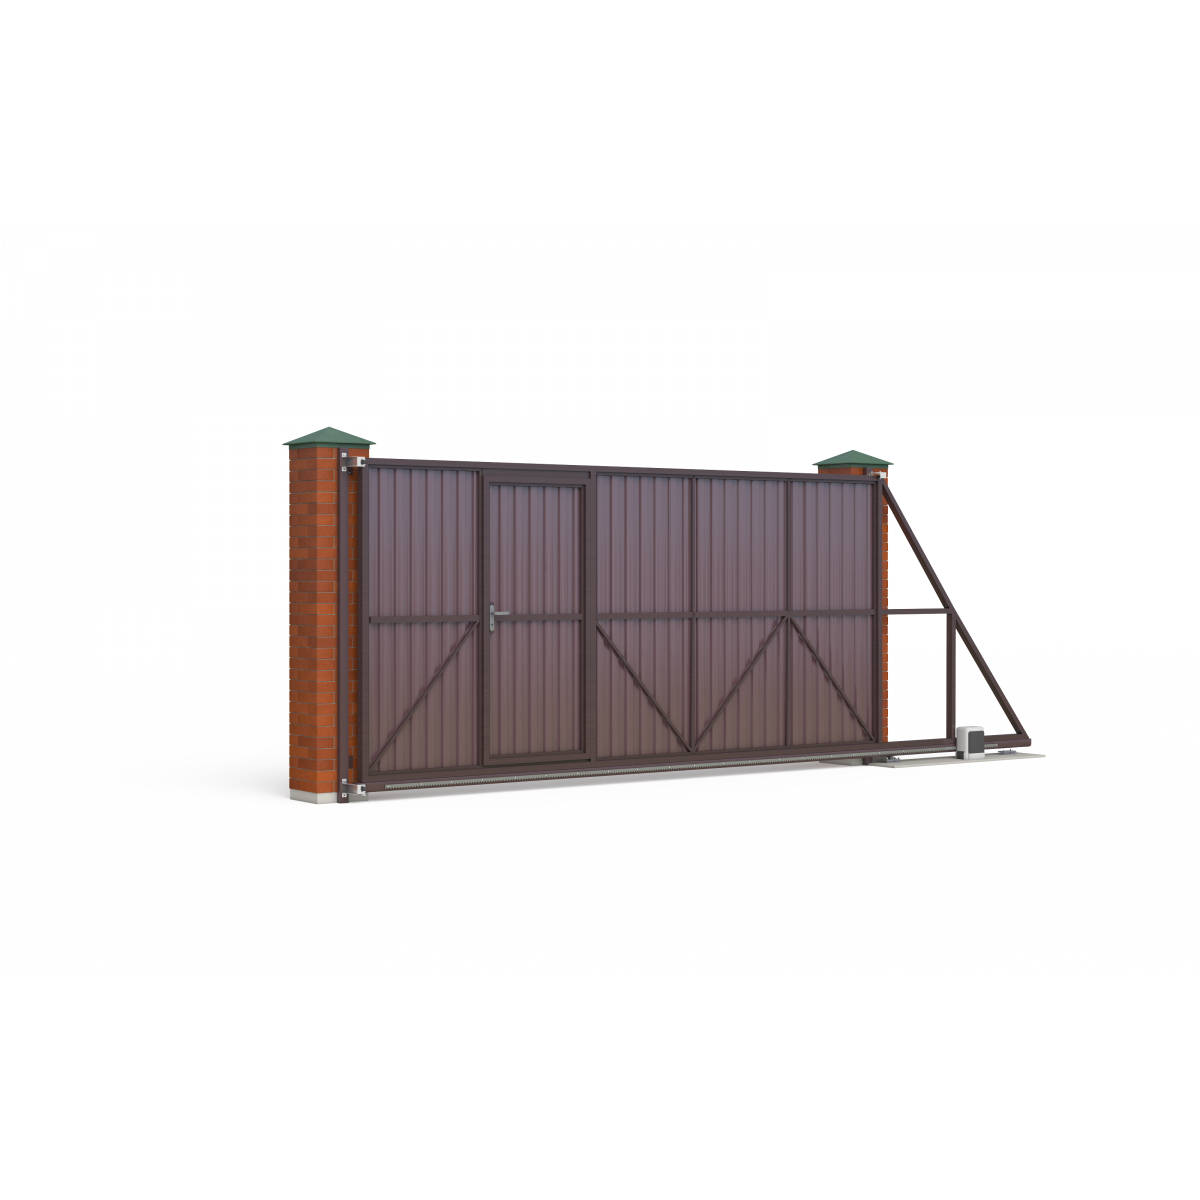 Откатные ворота с встроенной калиткой